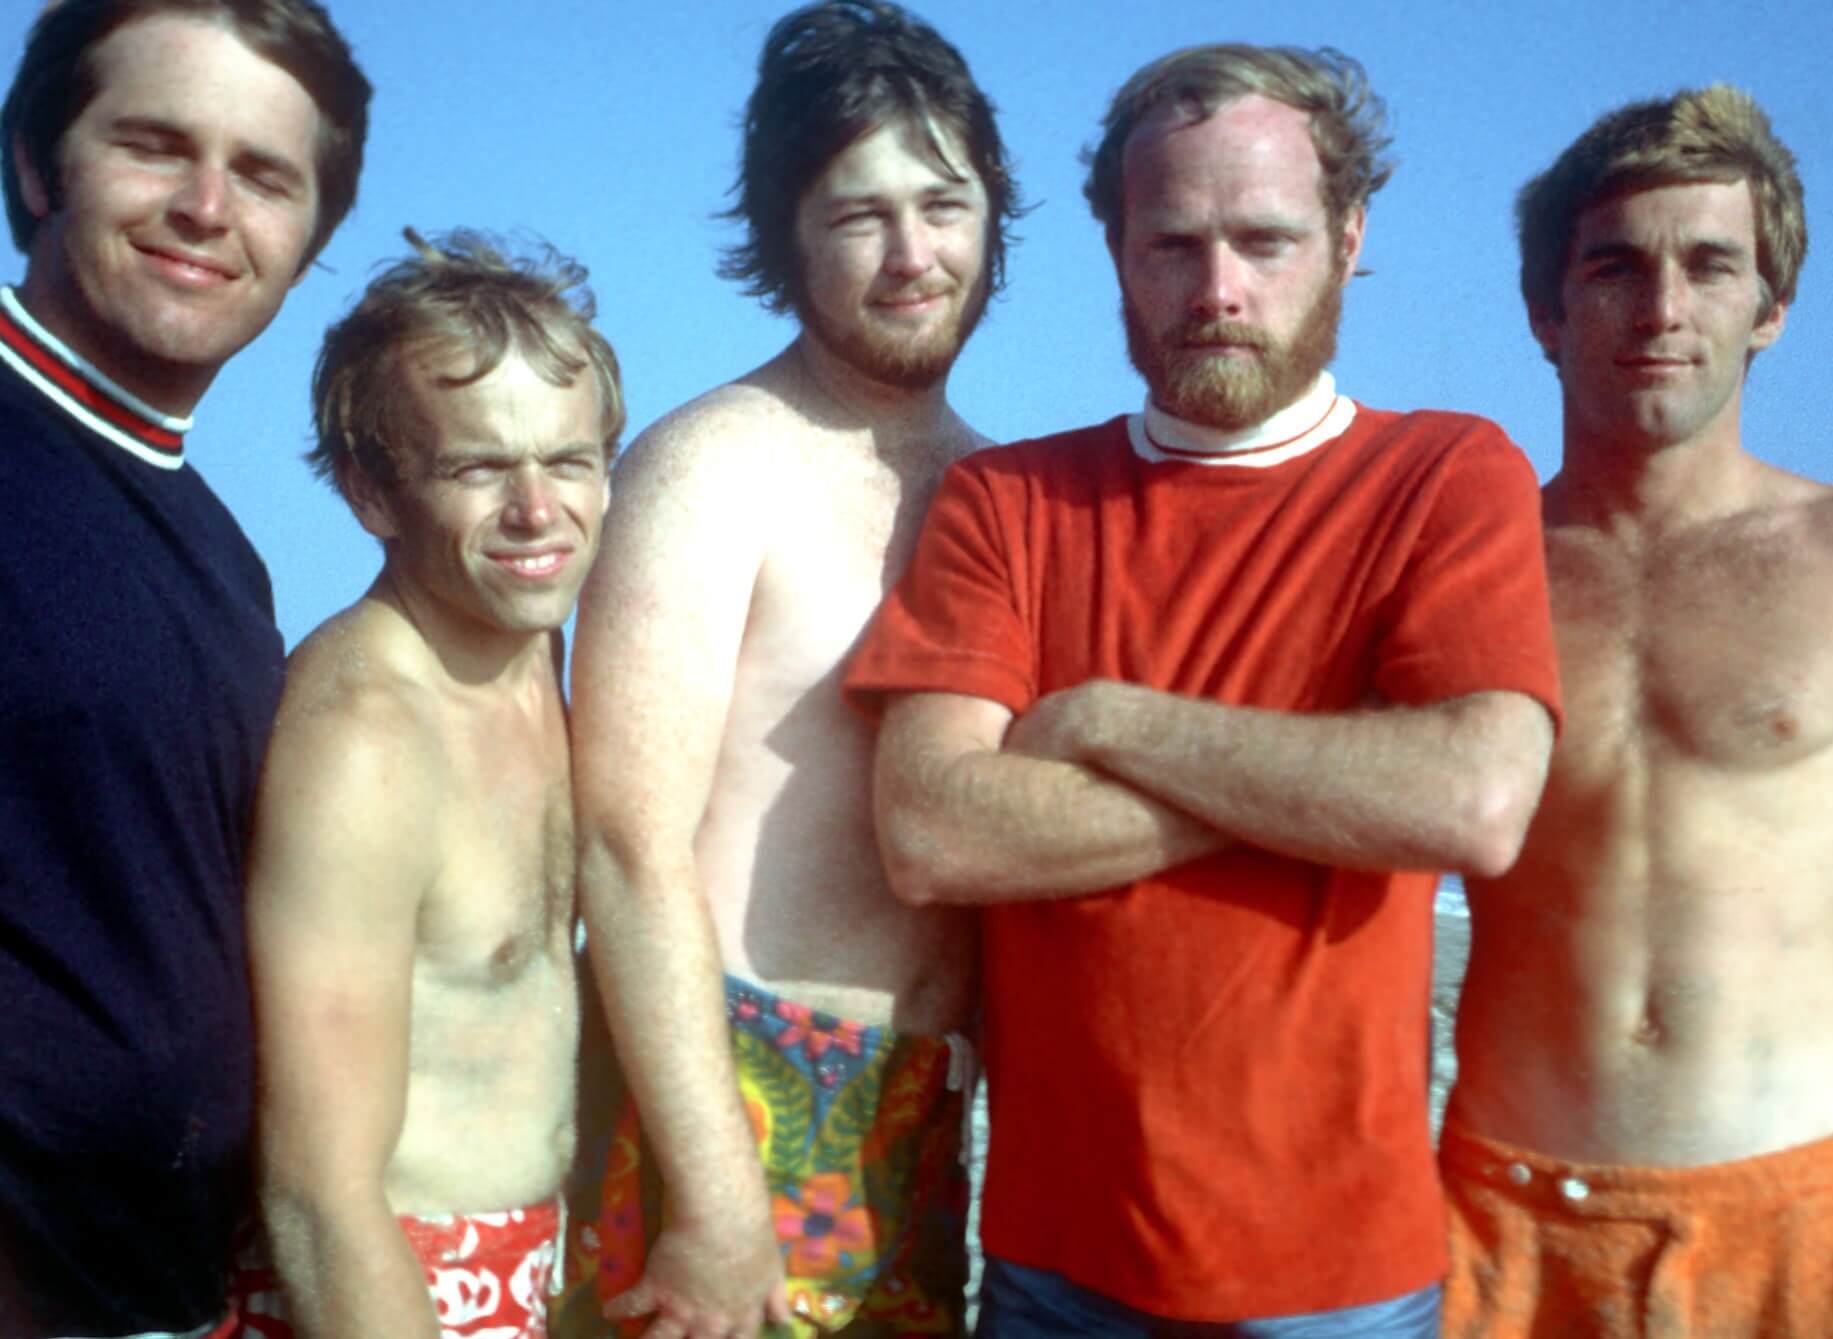 The Beach Boys on the beach